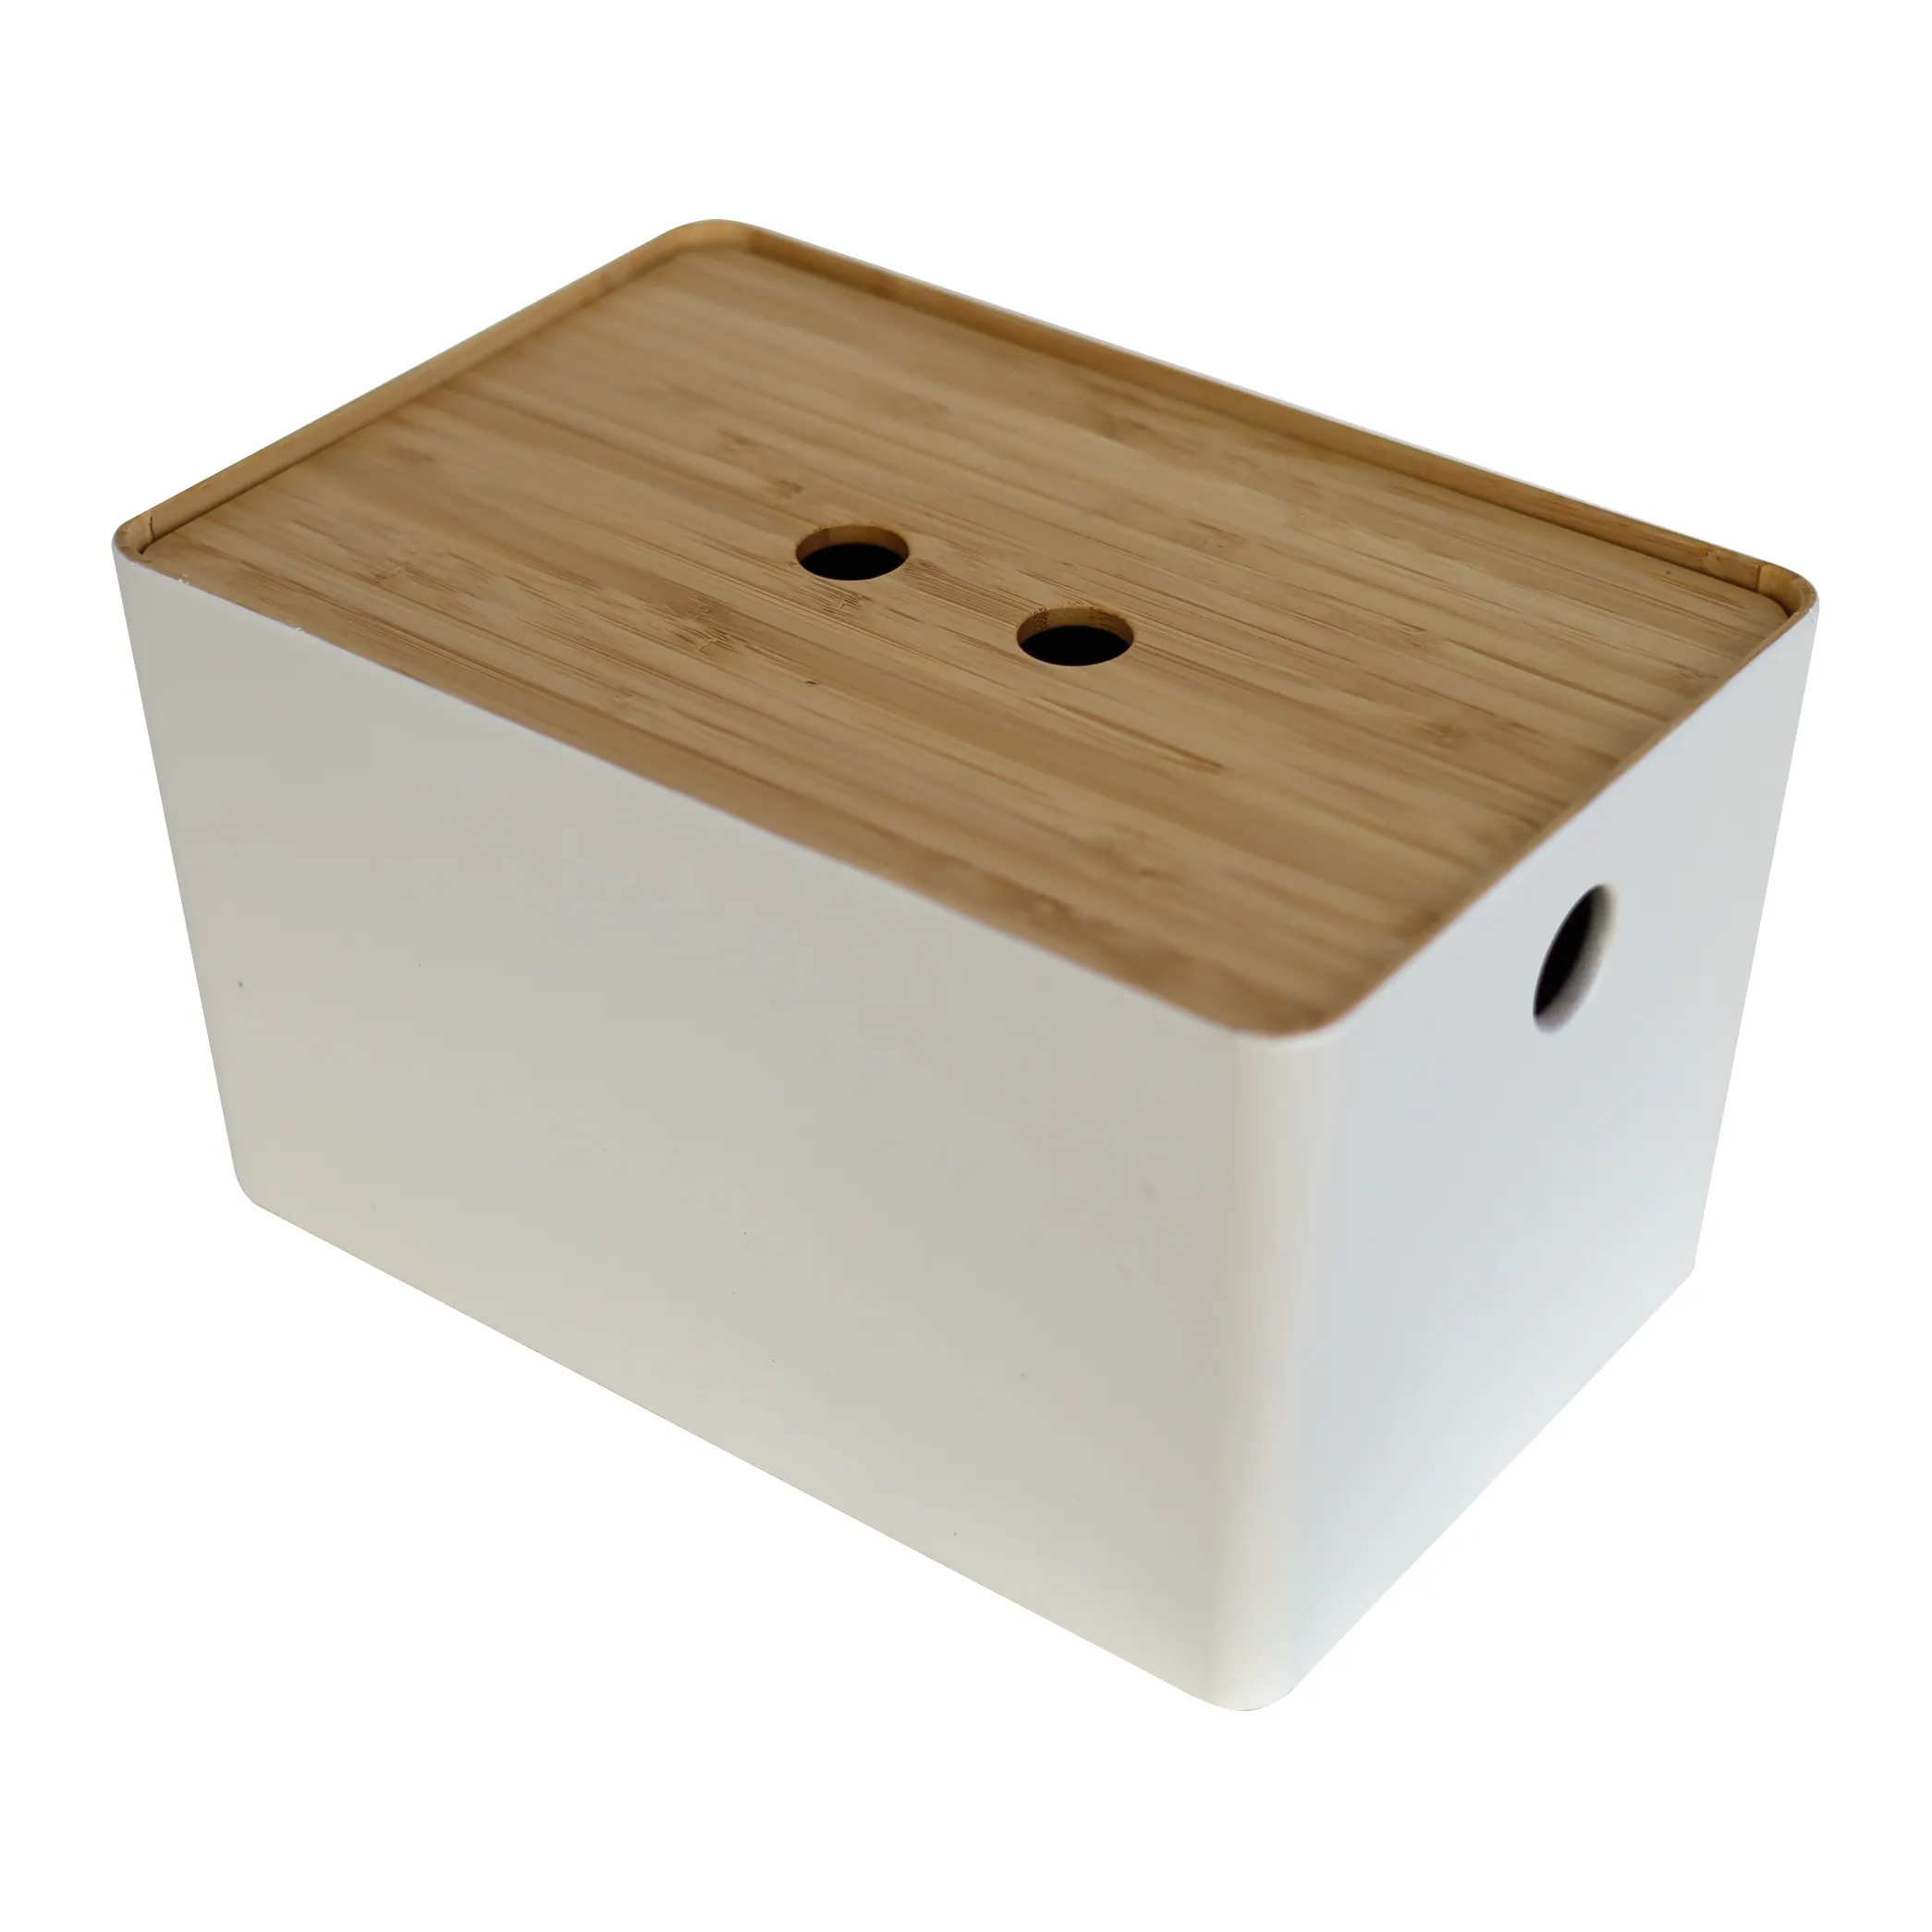 Contenitore Organizer da tavolo in legno con coperchio di bambù | Contenitore contenitore contenitore contenitore multifunzione per scrivania da casa